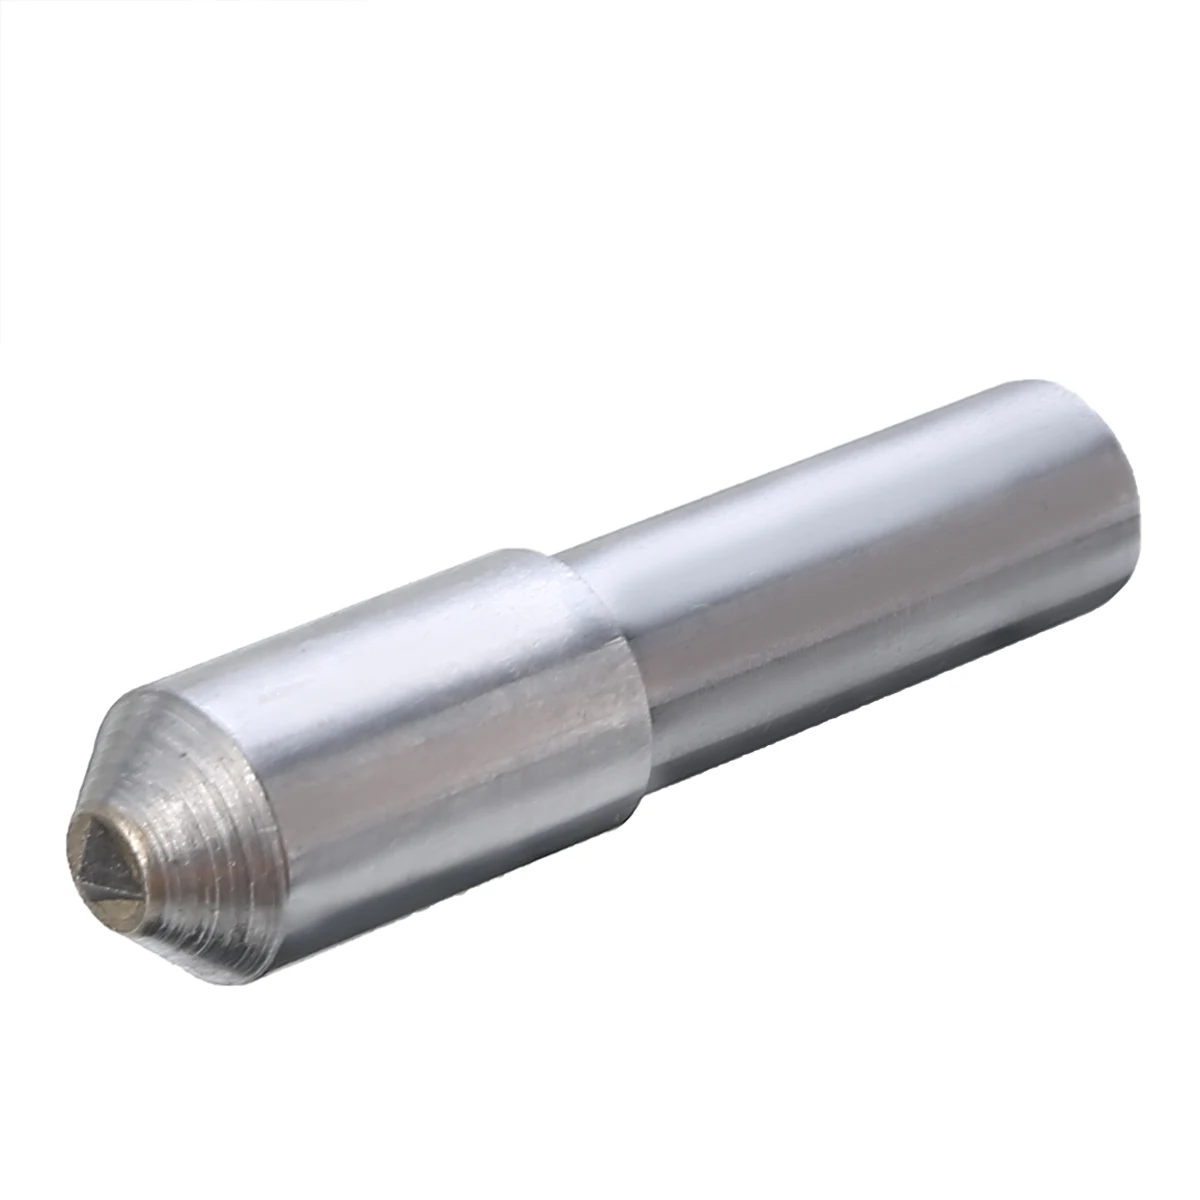 11 мм* 50 мм высококачественная сталь Алмазный комод шлифовальный круг шлифовальный станок туалетный инструмент ручка